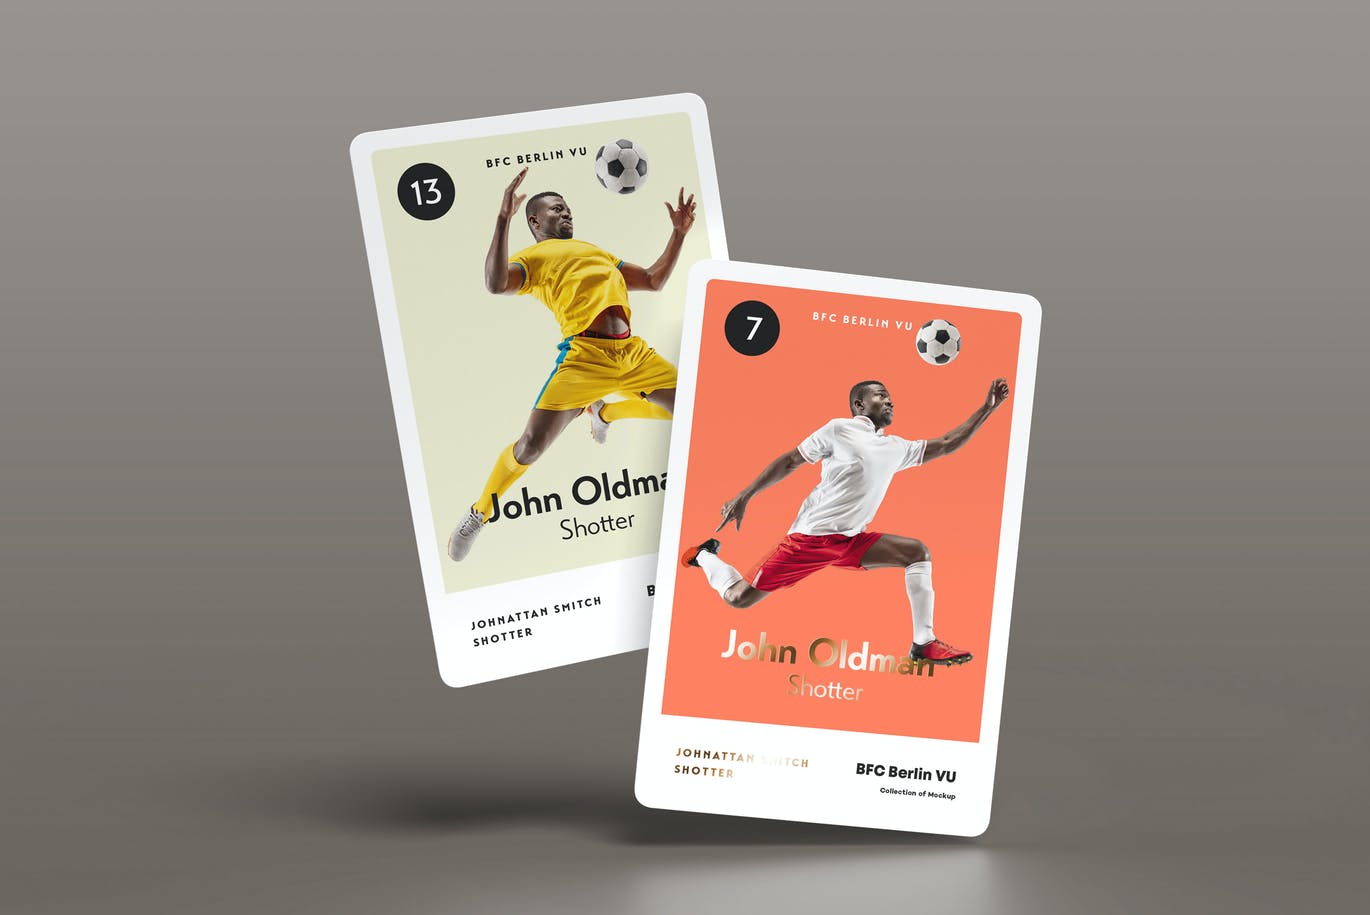 33 高品质的少见稀有欧洲杯世界杯欧冠中超甲A足球球星卡片包装设计VI样机展示模型mockups